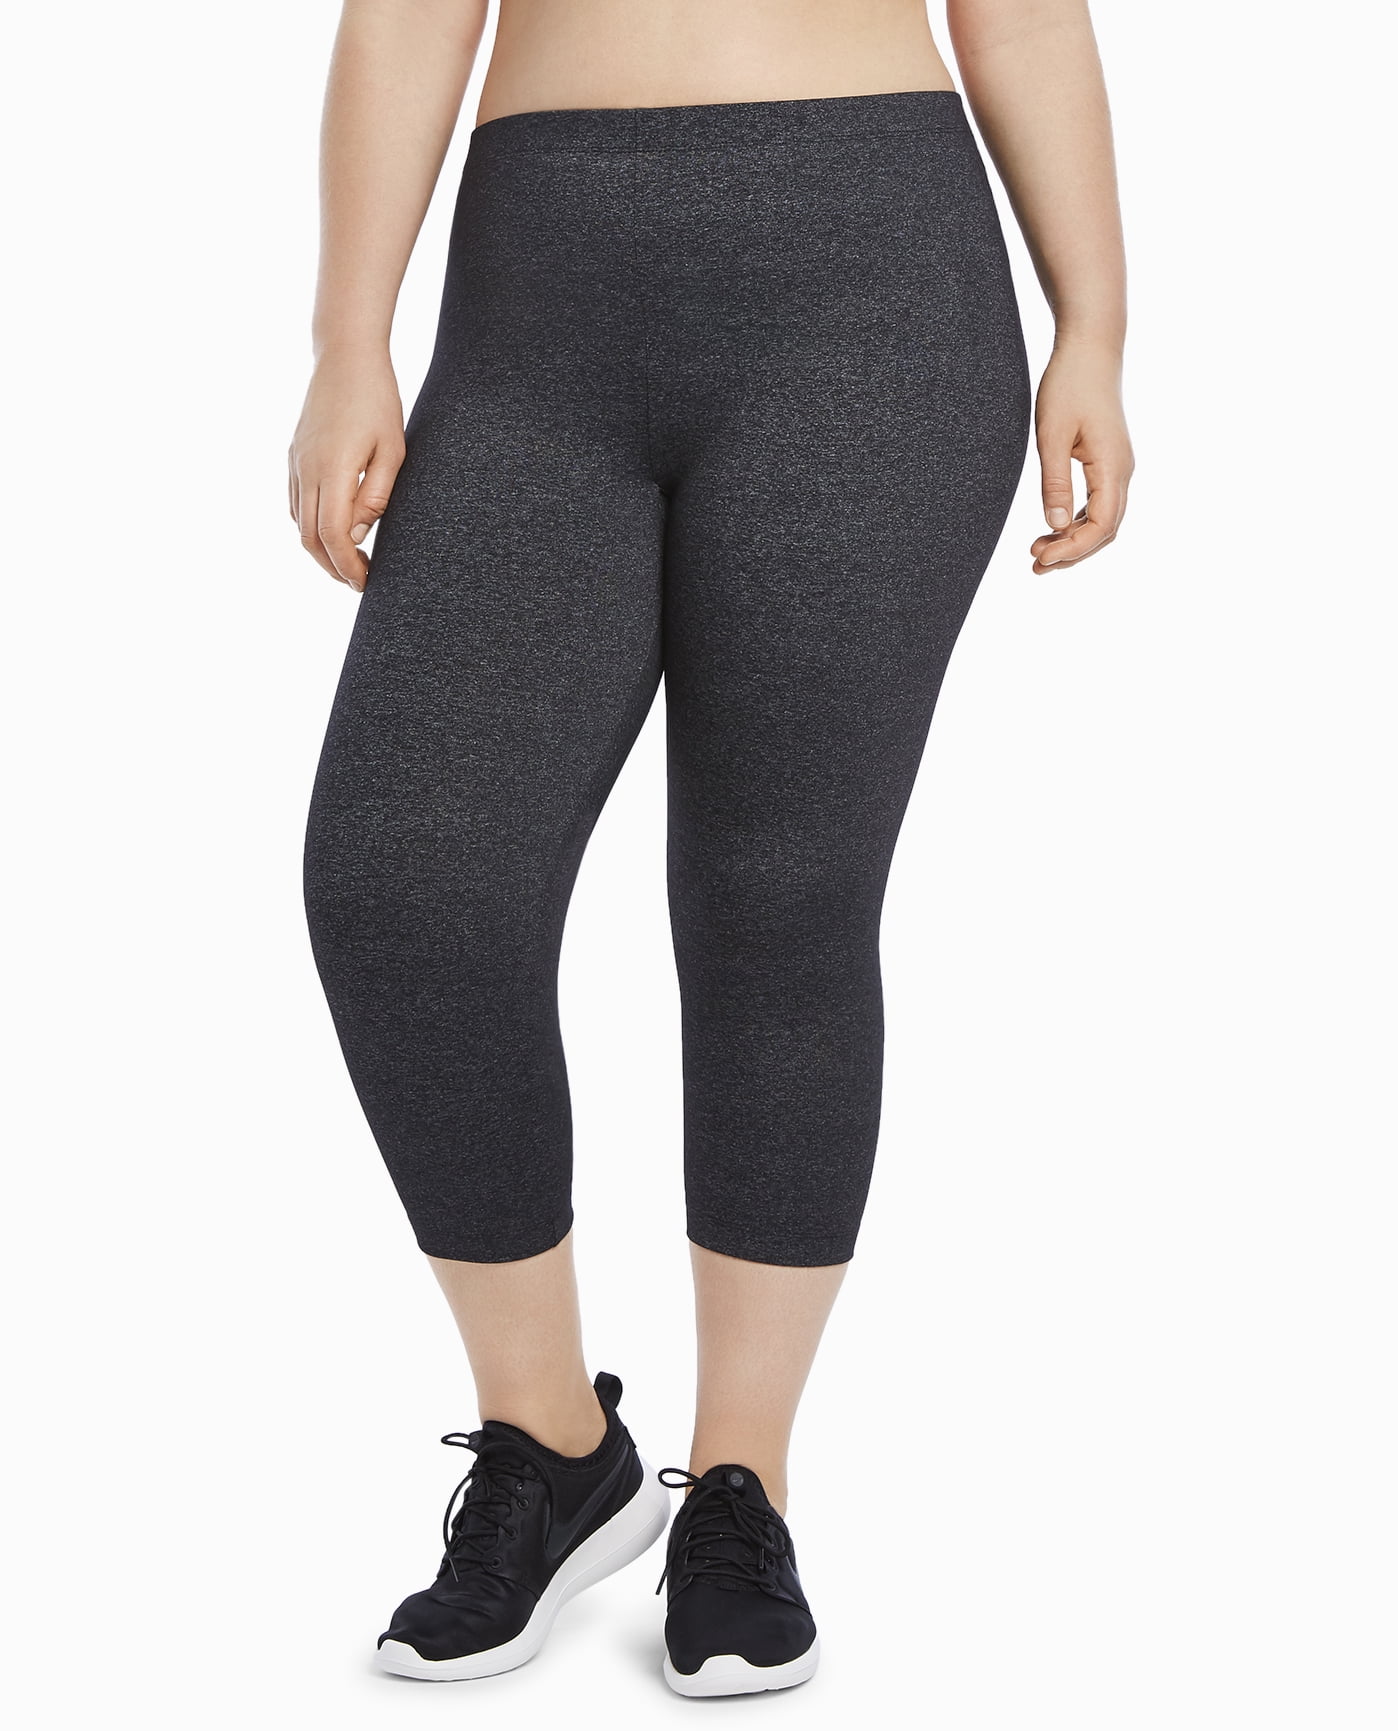 Women's Plus Size Supplex Capri Legging - Walmart.com